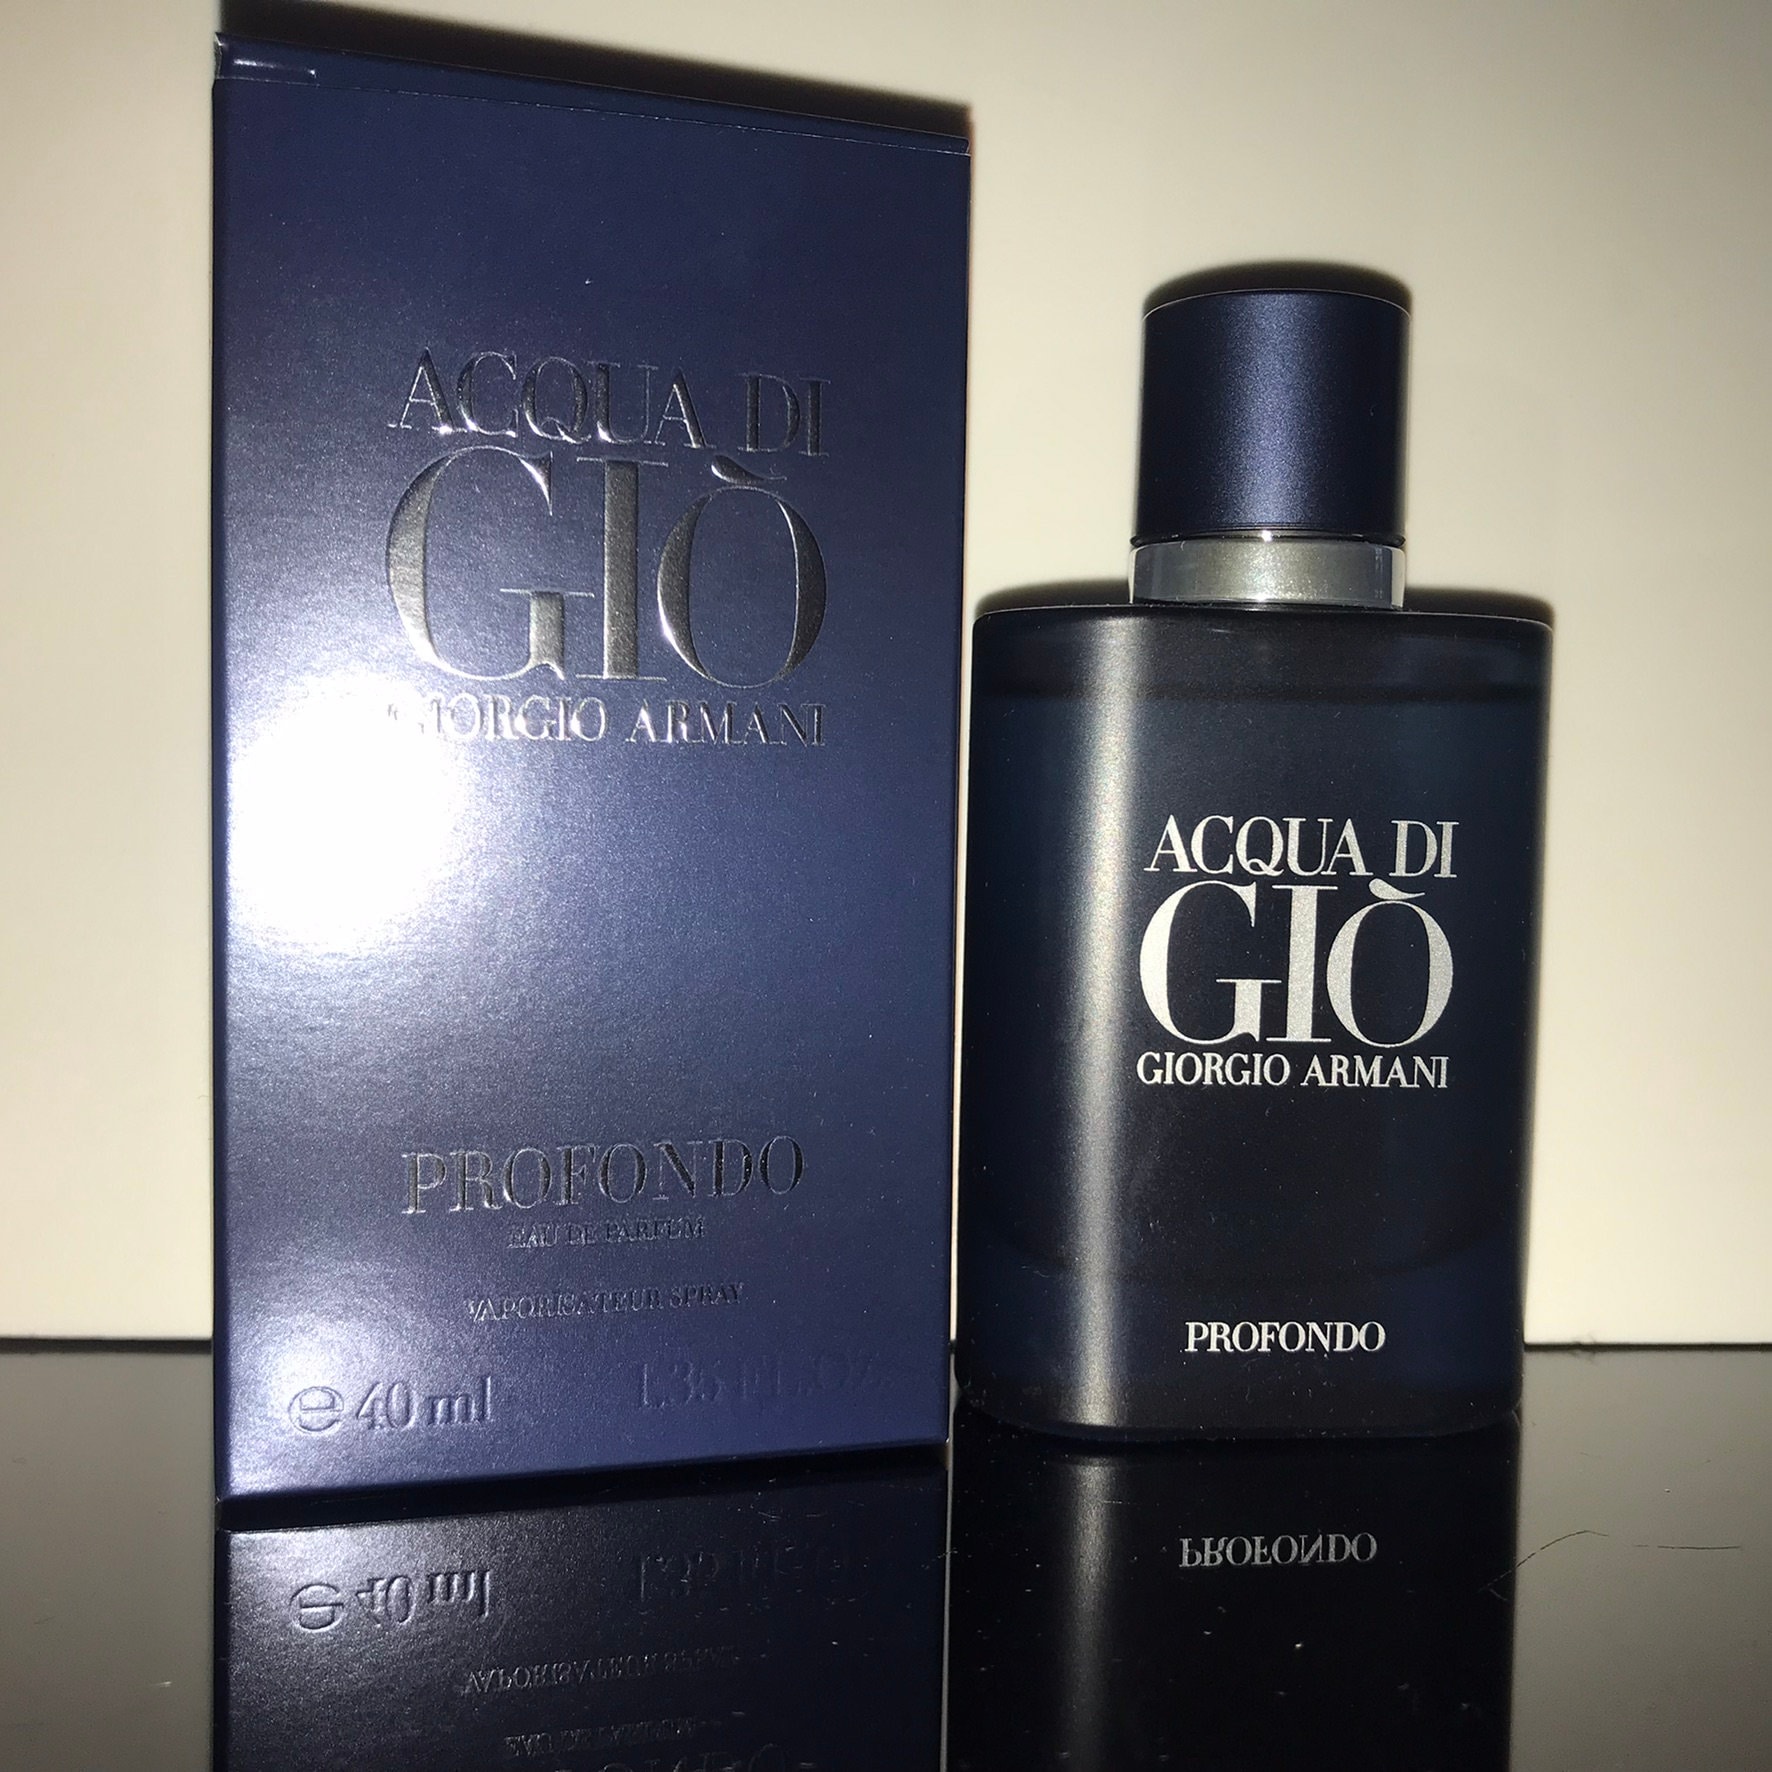 Giorgio Armani - Acqua Di Gio Profondo Eau De Parfum 40 Ml Siehe Beschreibung Und Fotos Mit Box, Sehr Gut Als Geschenk Für Ihn Geeignet von miniperfumes